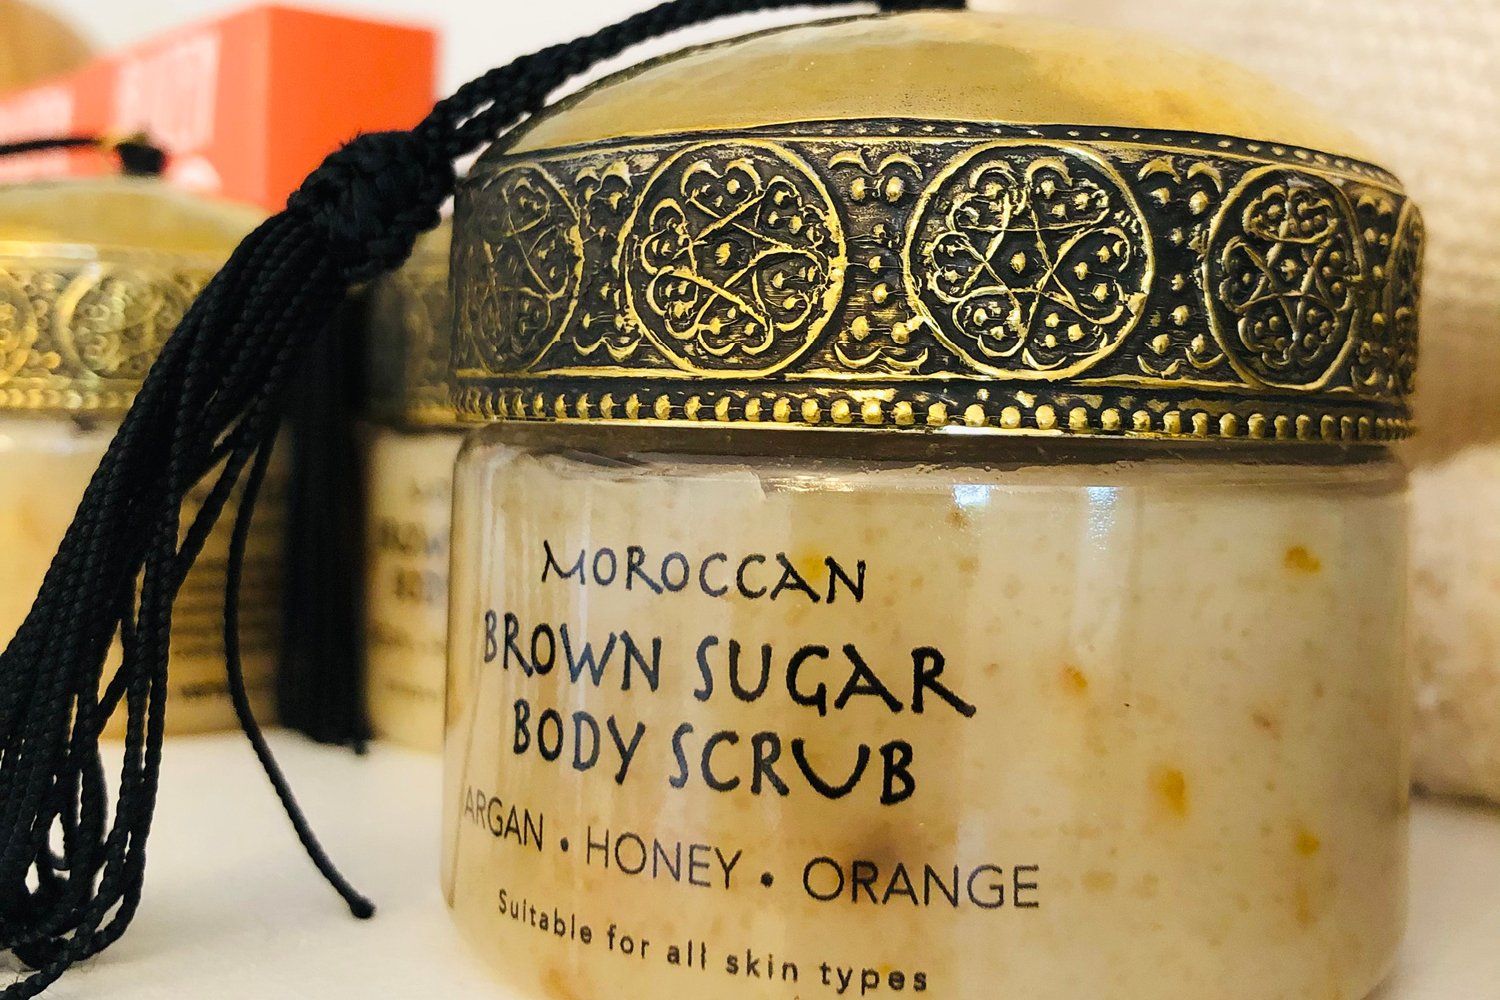 Moroccan Brown Sugar Body Scrub at Bailey Island Mercantile